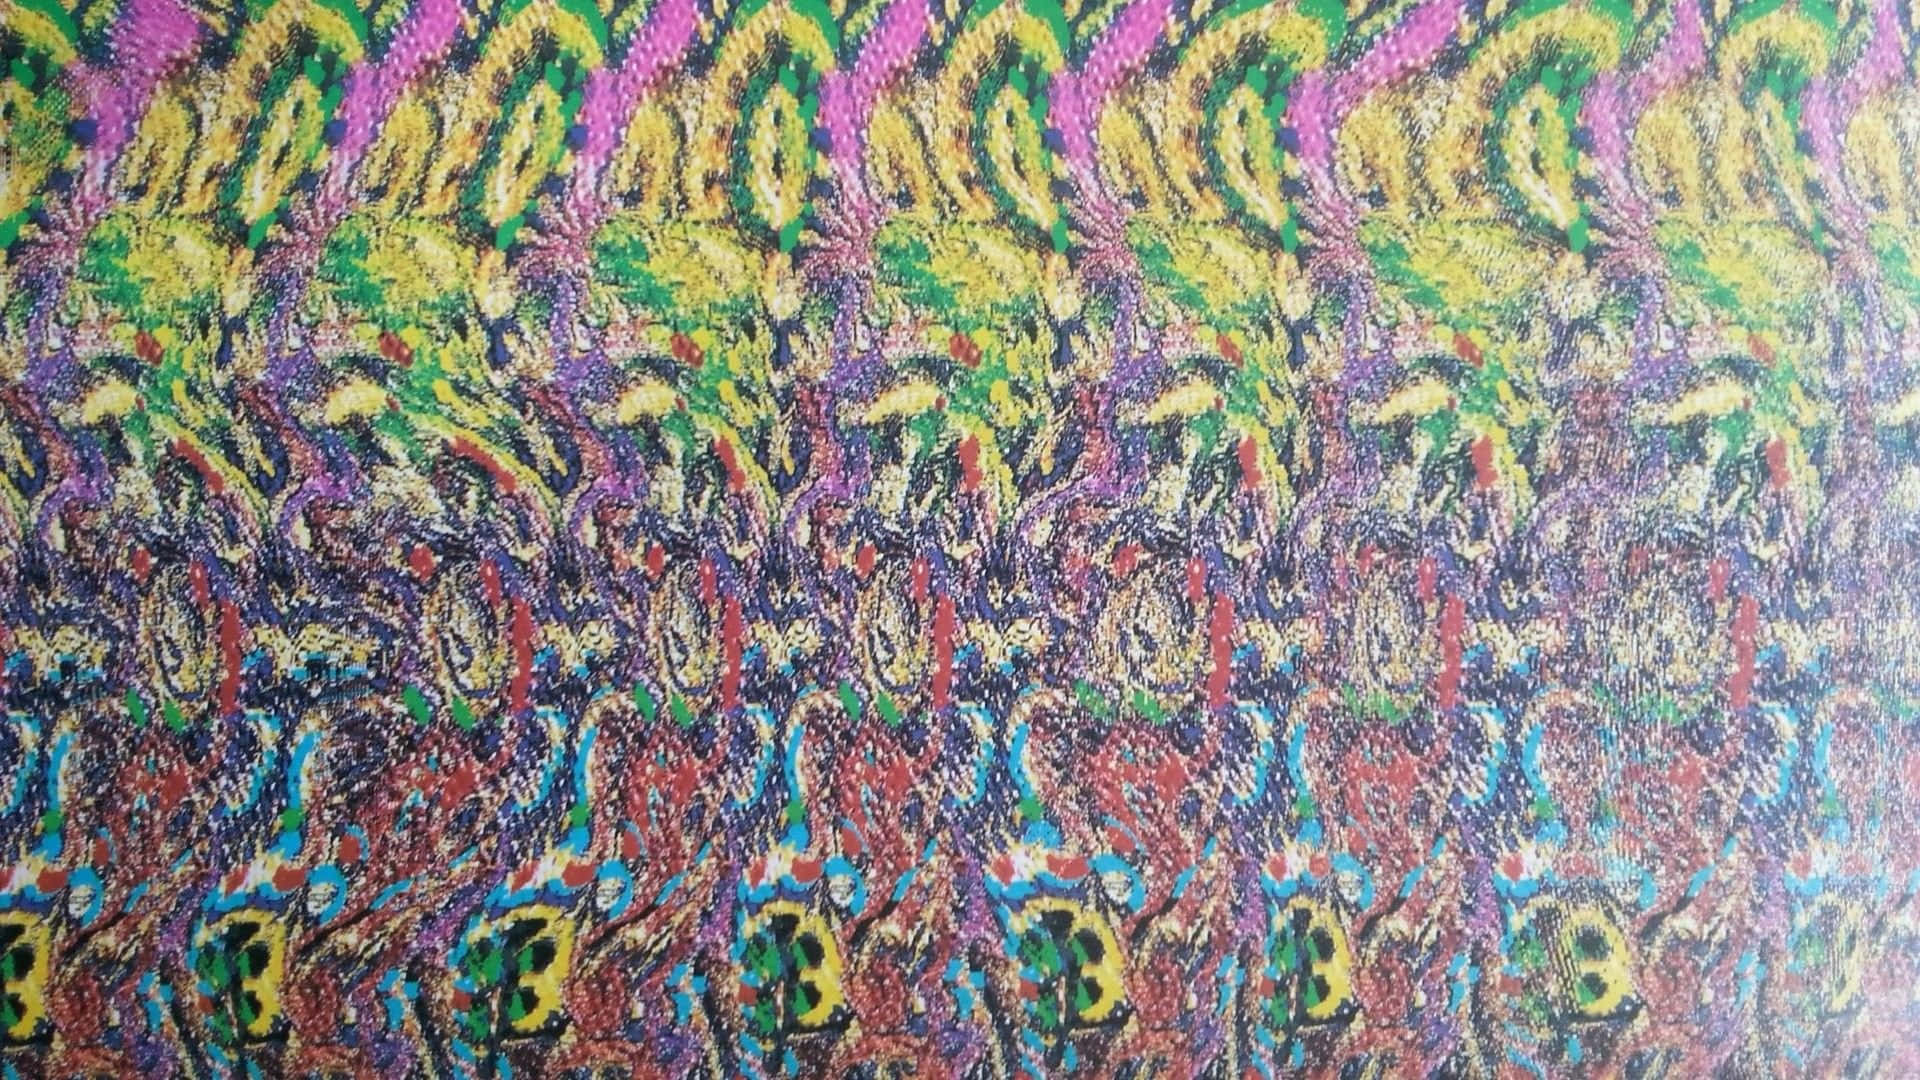 Indtast en optisk illusion med et magisk øje Wallpaper